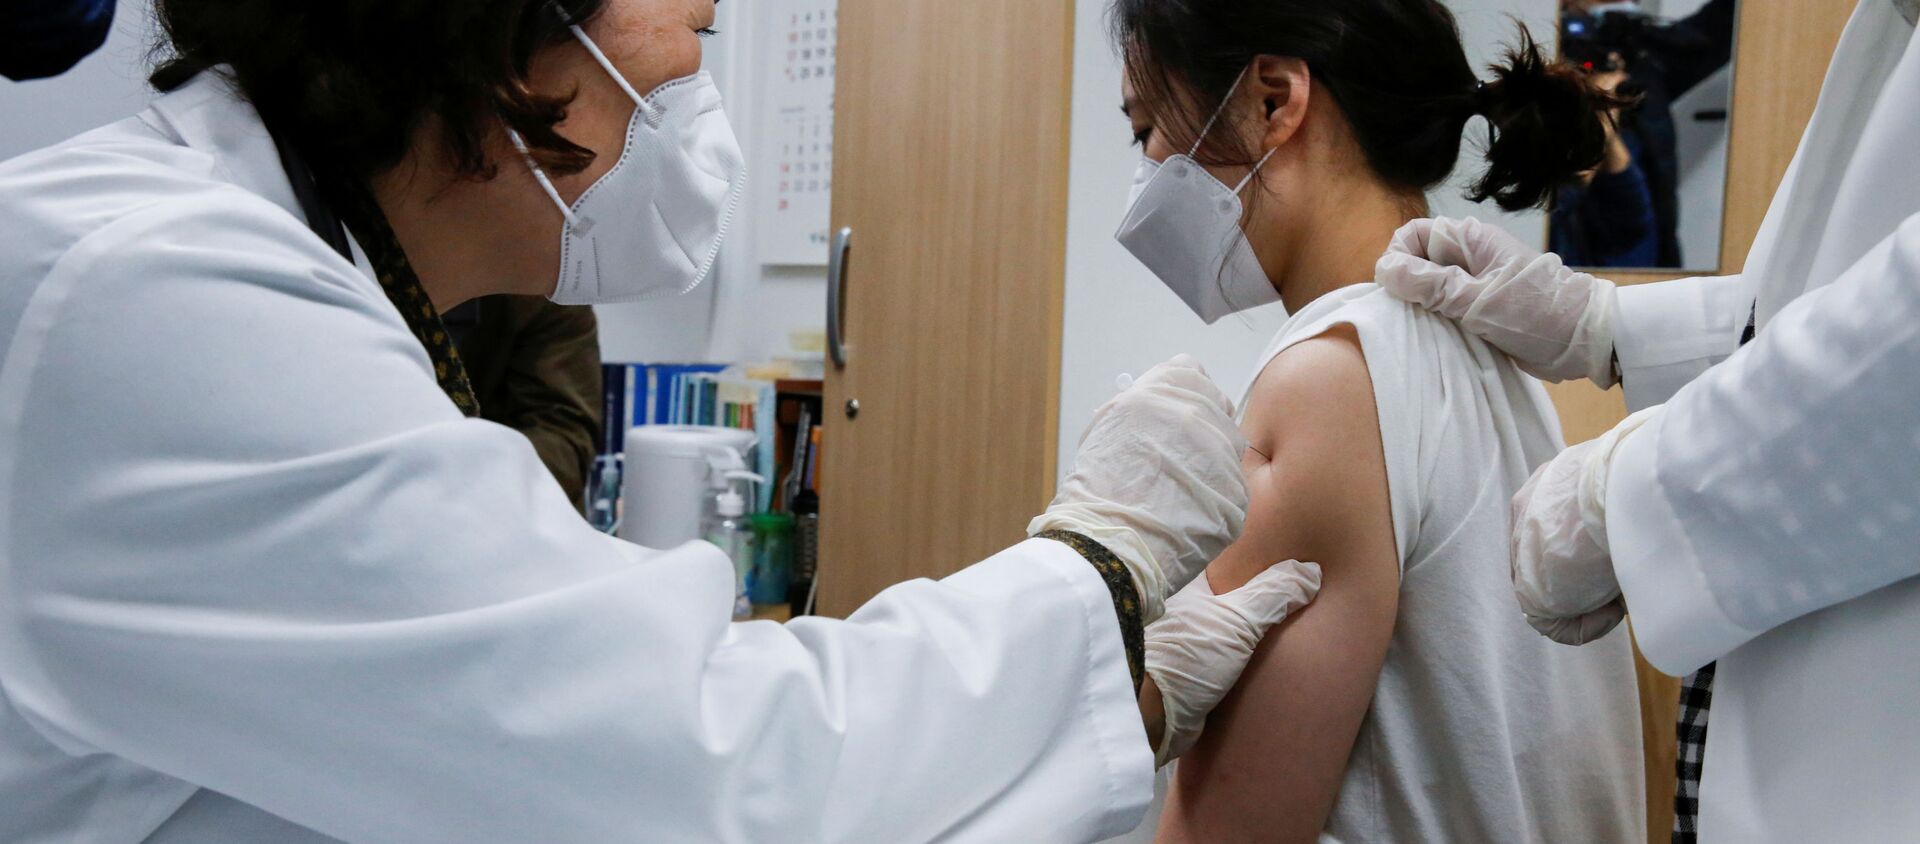 Nhân viên viện dưỡng lão được tiêm vắc xin AstraZeneca ở Seoul, Hàn Quốc. - Sputnik Việt Nam, 1920, 31.05.2021